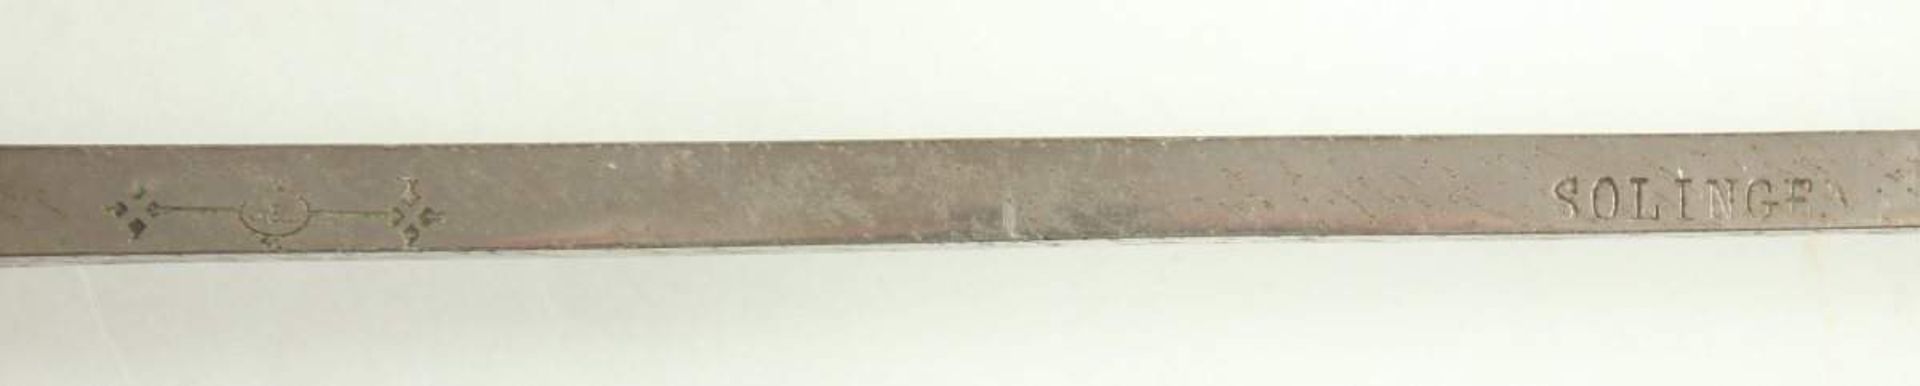 FLORETT, vernickelte Klinge (Hersteller Clemen und Jung, Solingen), L 103 - Bild 3 aus 3